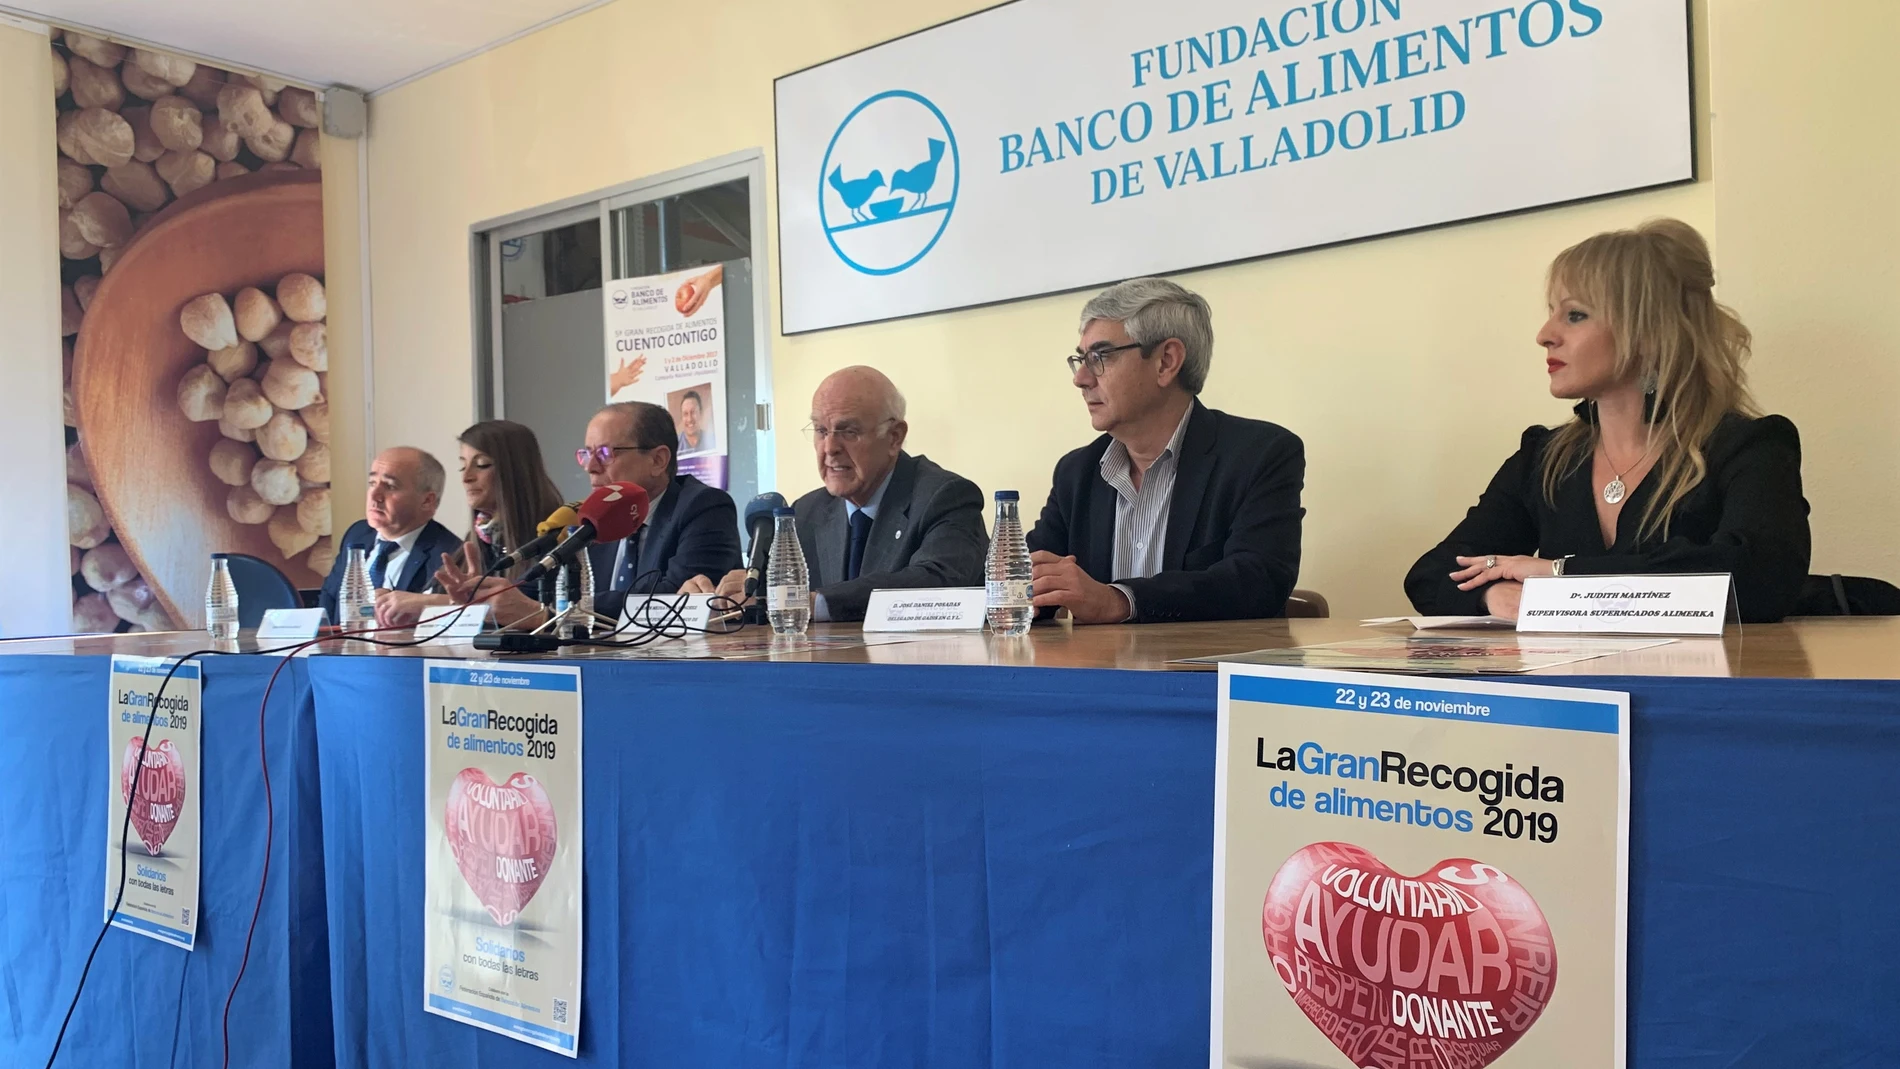 La Gran Recogida del Banco de Alimentos de Valladolid espera superar los 200.000 kilos con el apoyo de 1.600 voluntarios